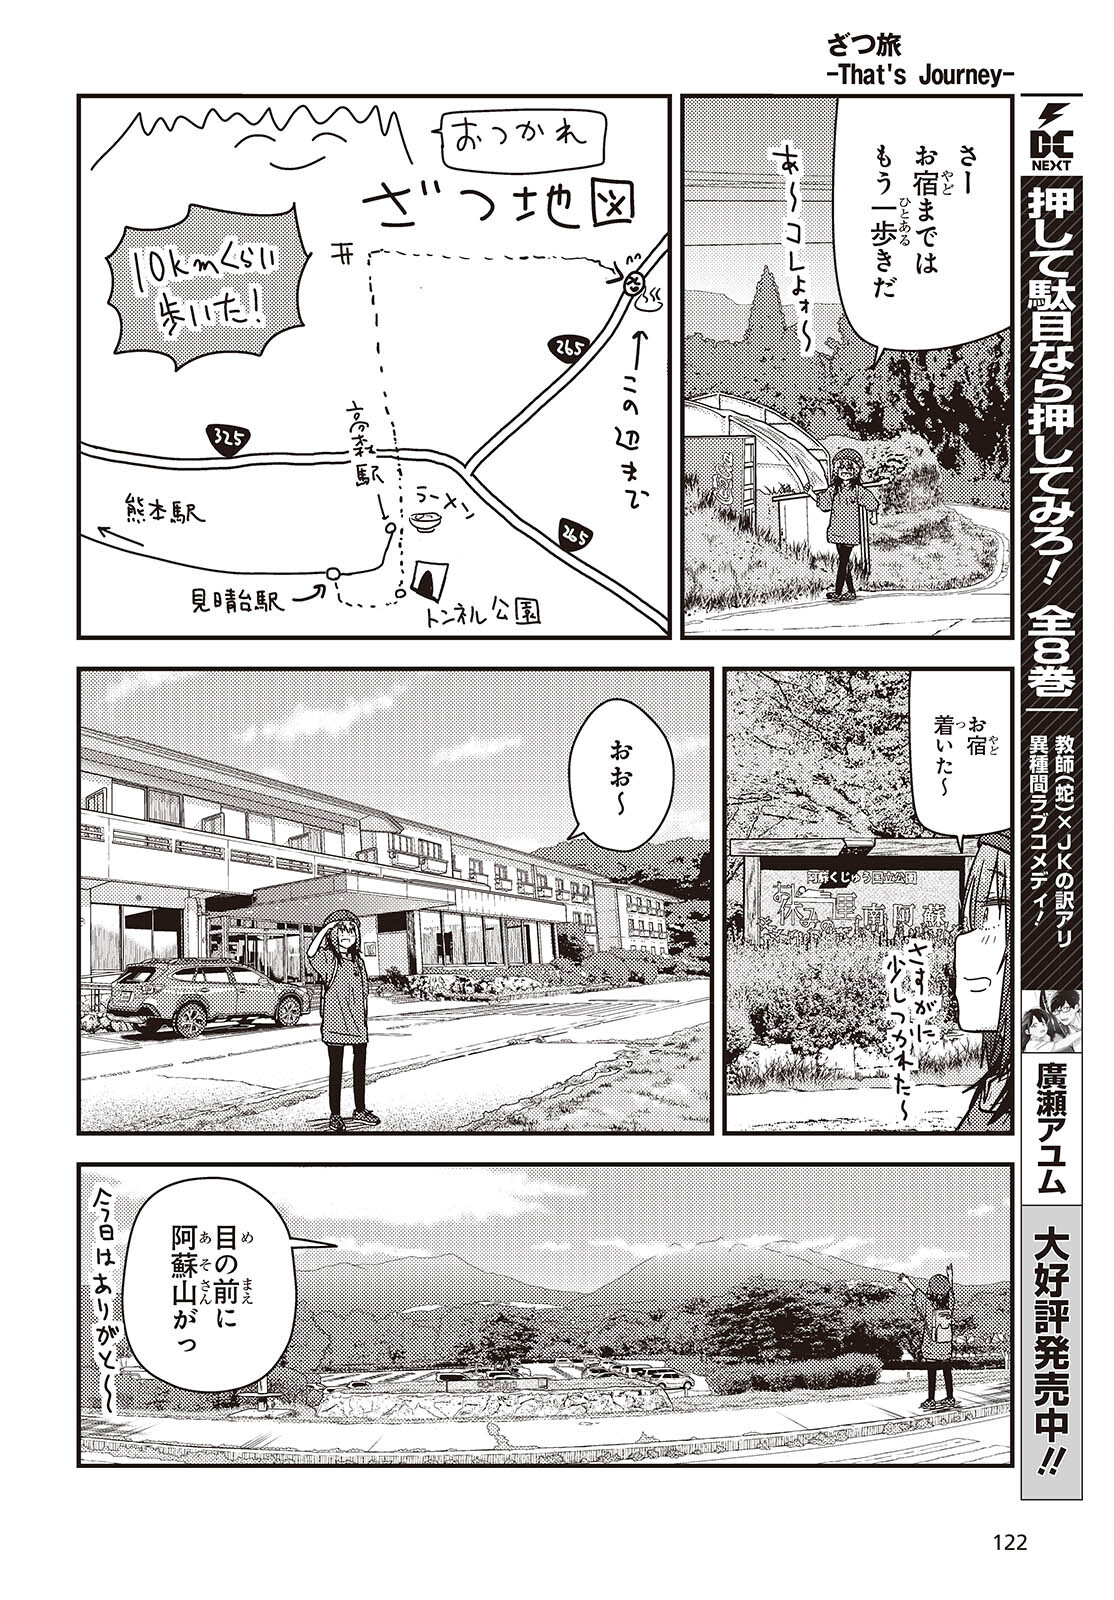 ざつ旅-That’s Journey- 第35話 - Page 12